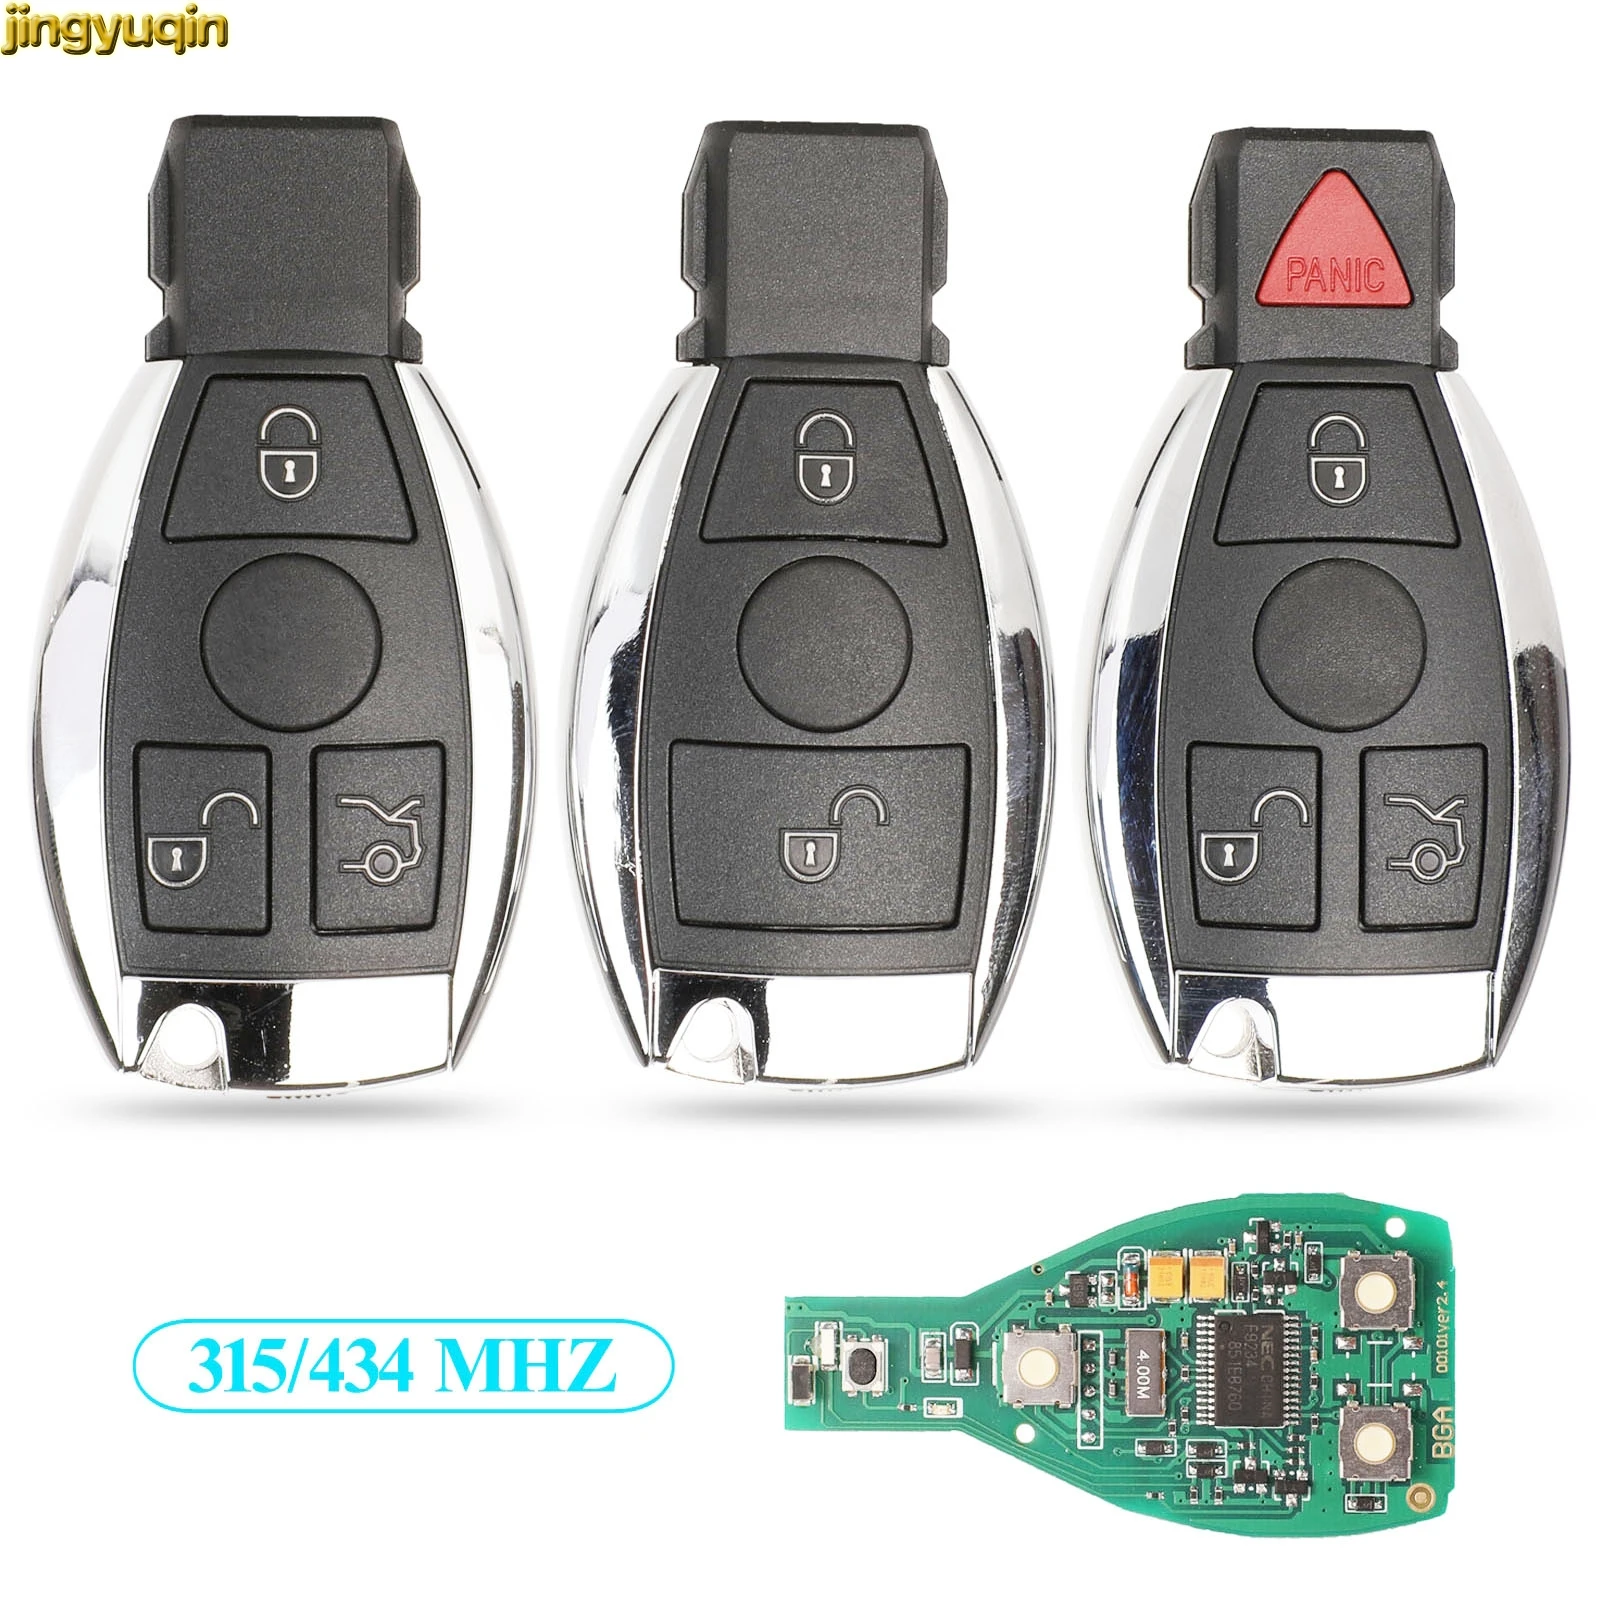 

Jingyuqin Smart Car Key 315/434MHZ For Mercedes Benz A B C E S Class W203 W204 W205 W210 W211 W212 W221 W222 BGA NEC Remote Fob